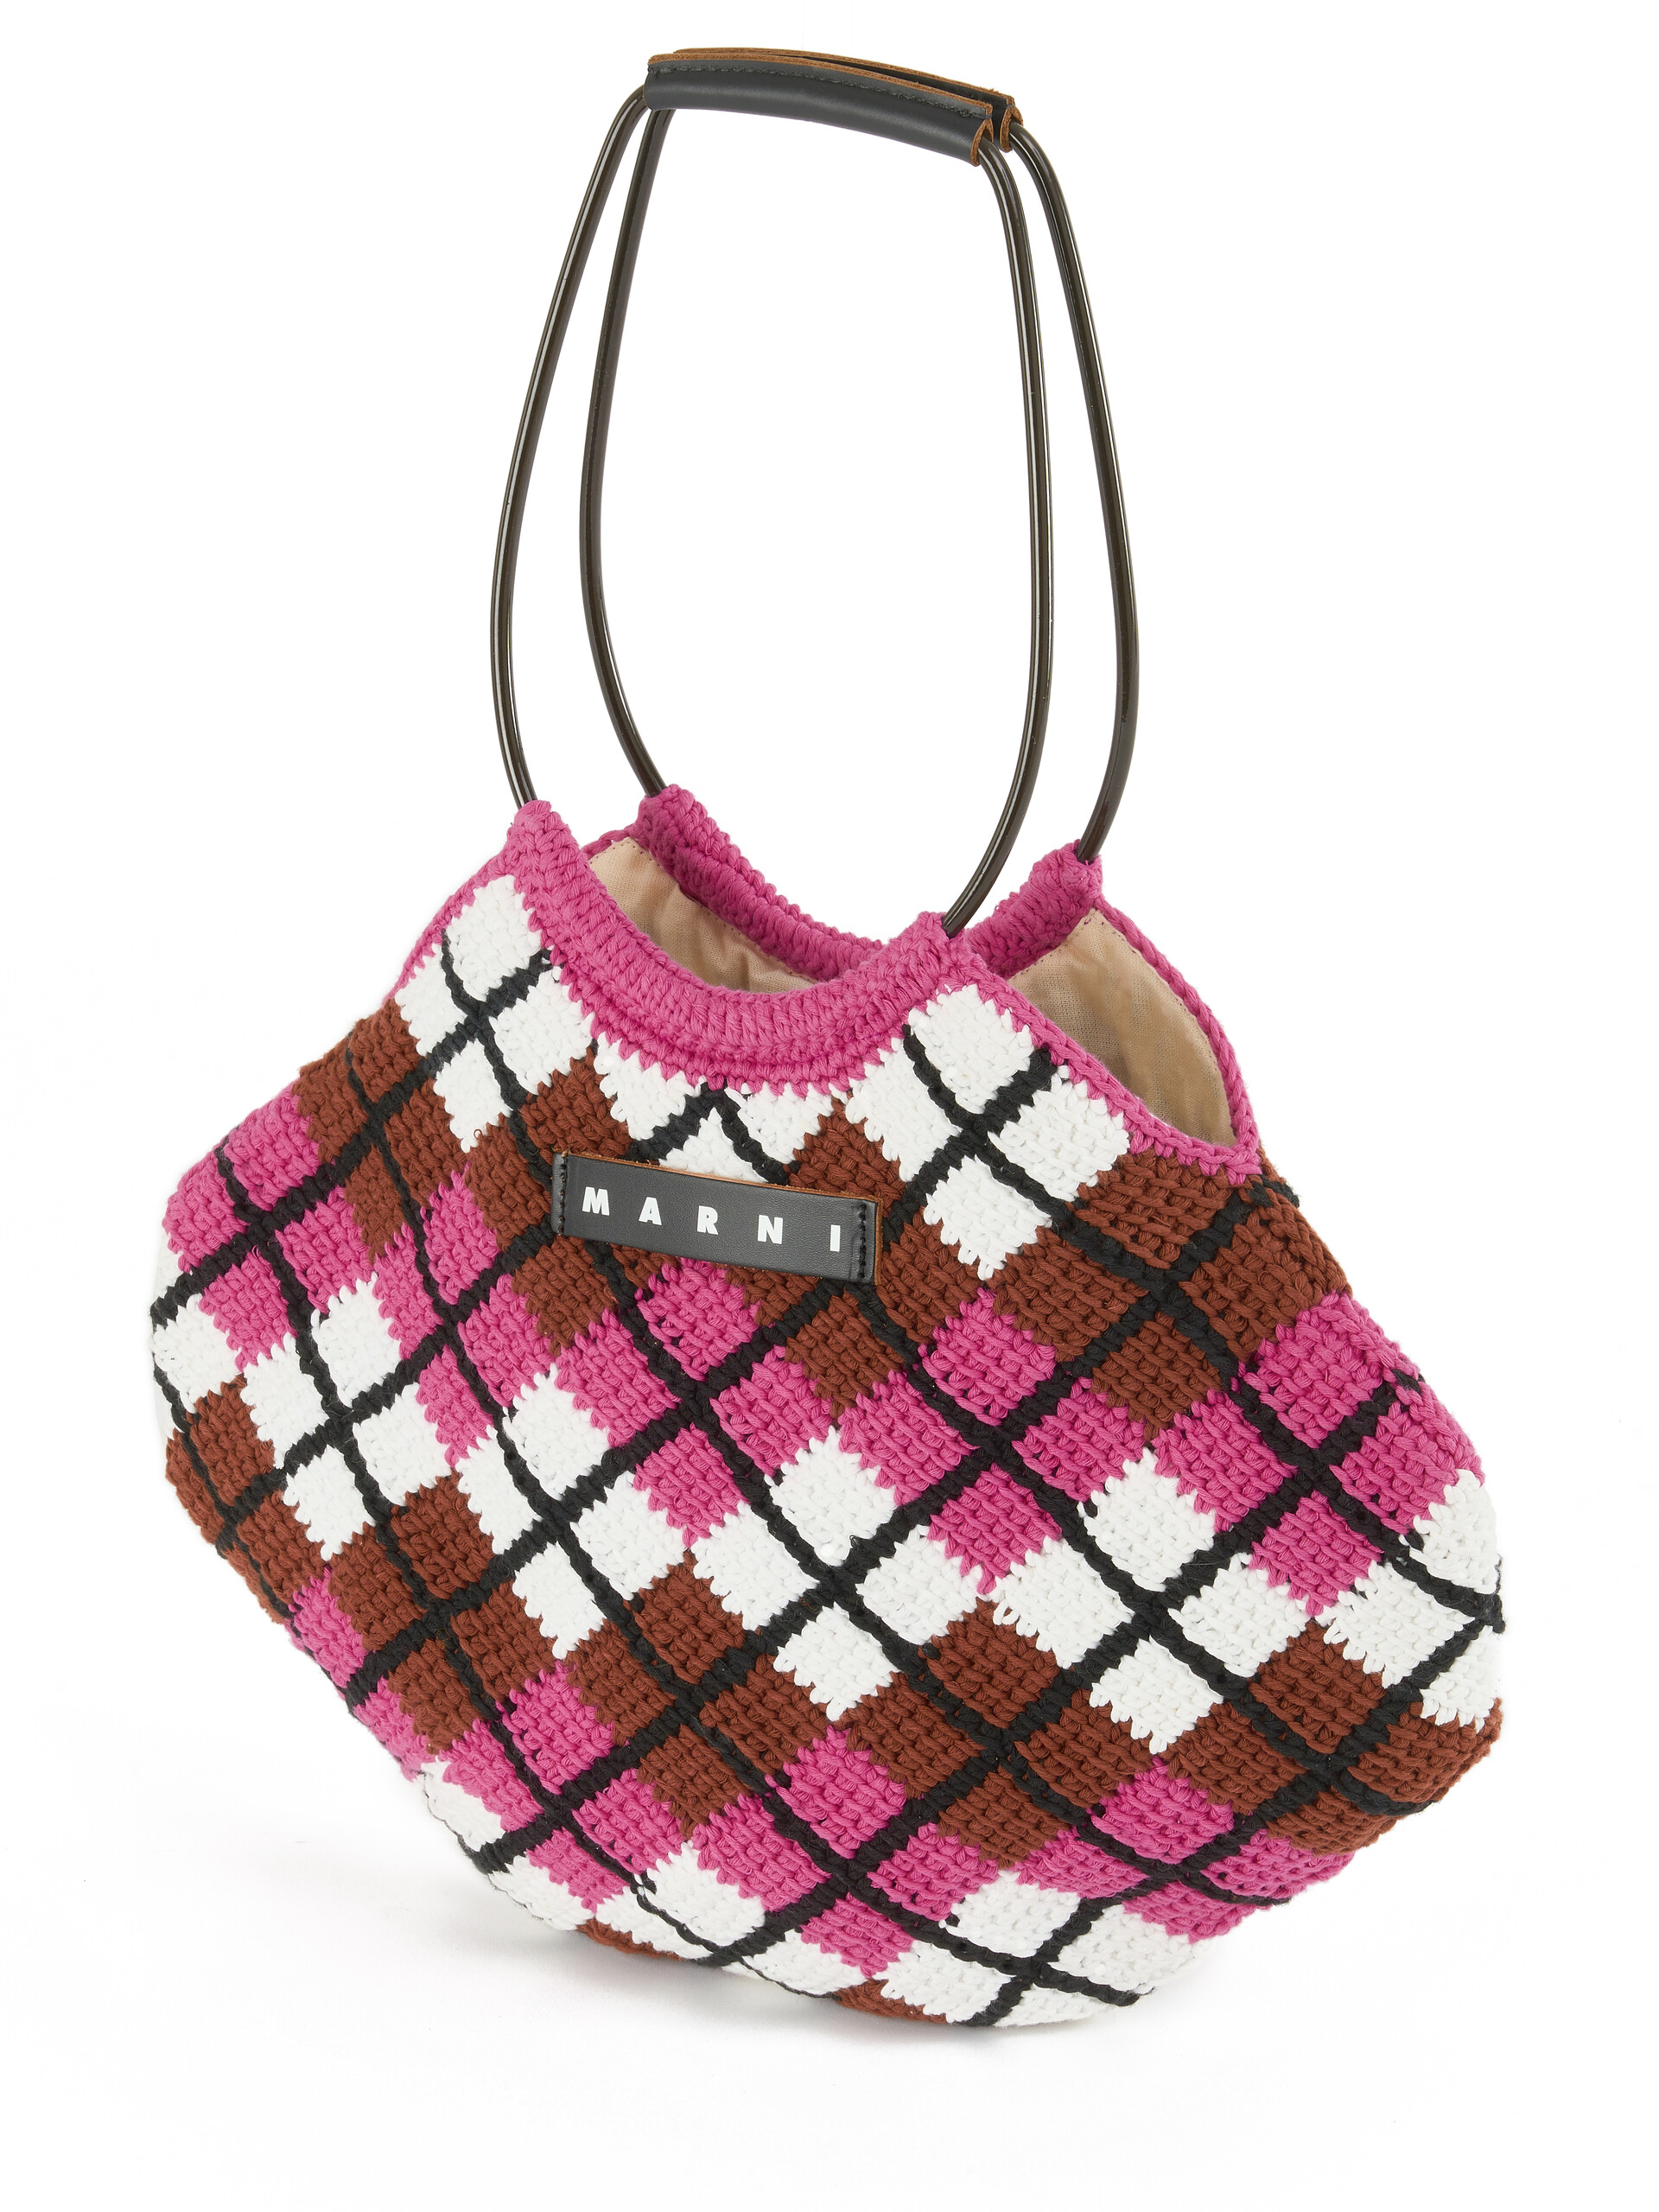 MARNI MARKET Handtasche mit Rautenmuster aus Baumwolle in Rosa - Shopper - Image 4